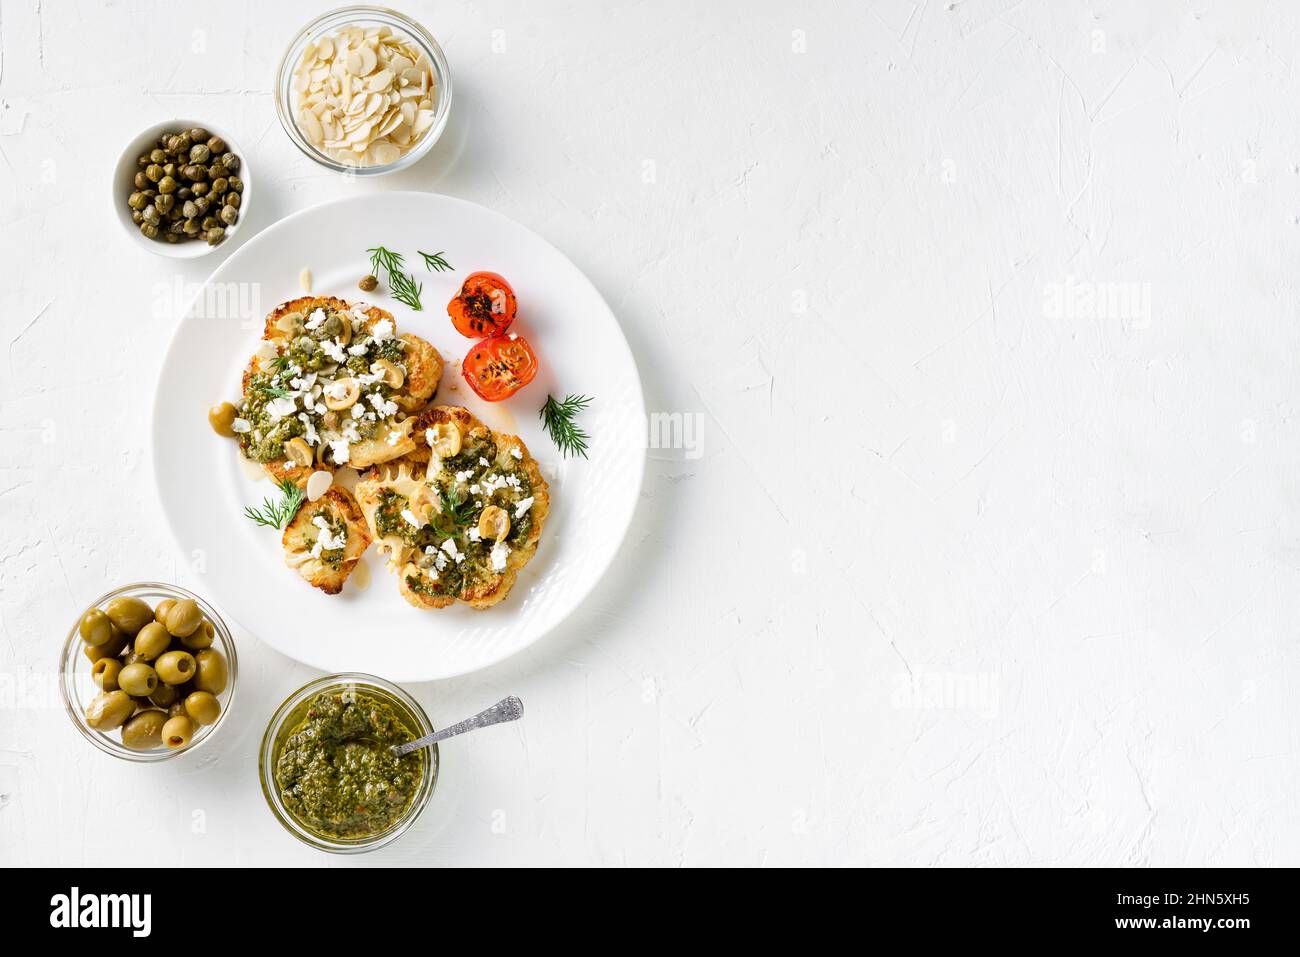 Blumenkohlesteak mit Gewürzen, Chimichurri-Sauce, Mandelflocken, Oliven, gebratenen Kirschtomaten und Kapern auf einem weißen Teller. Vegetarische Gerichte. Weiß, Bac Stockfoto